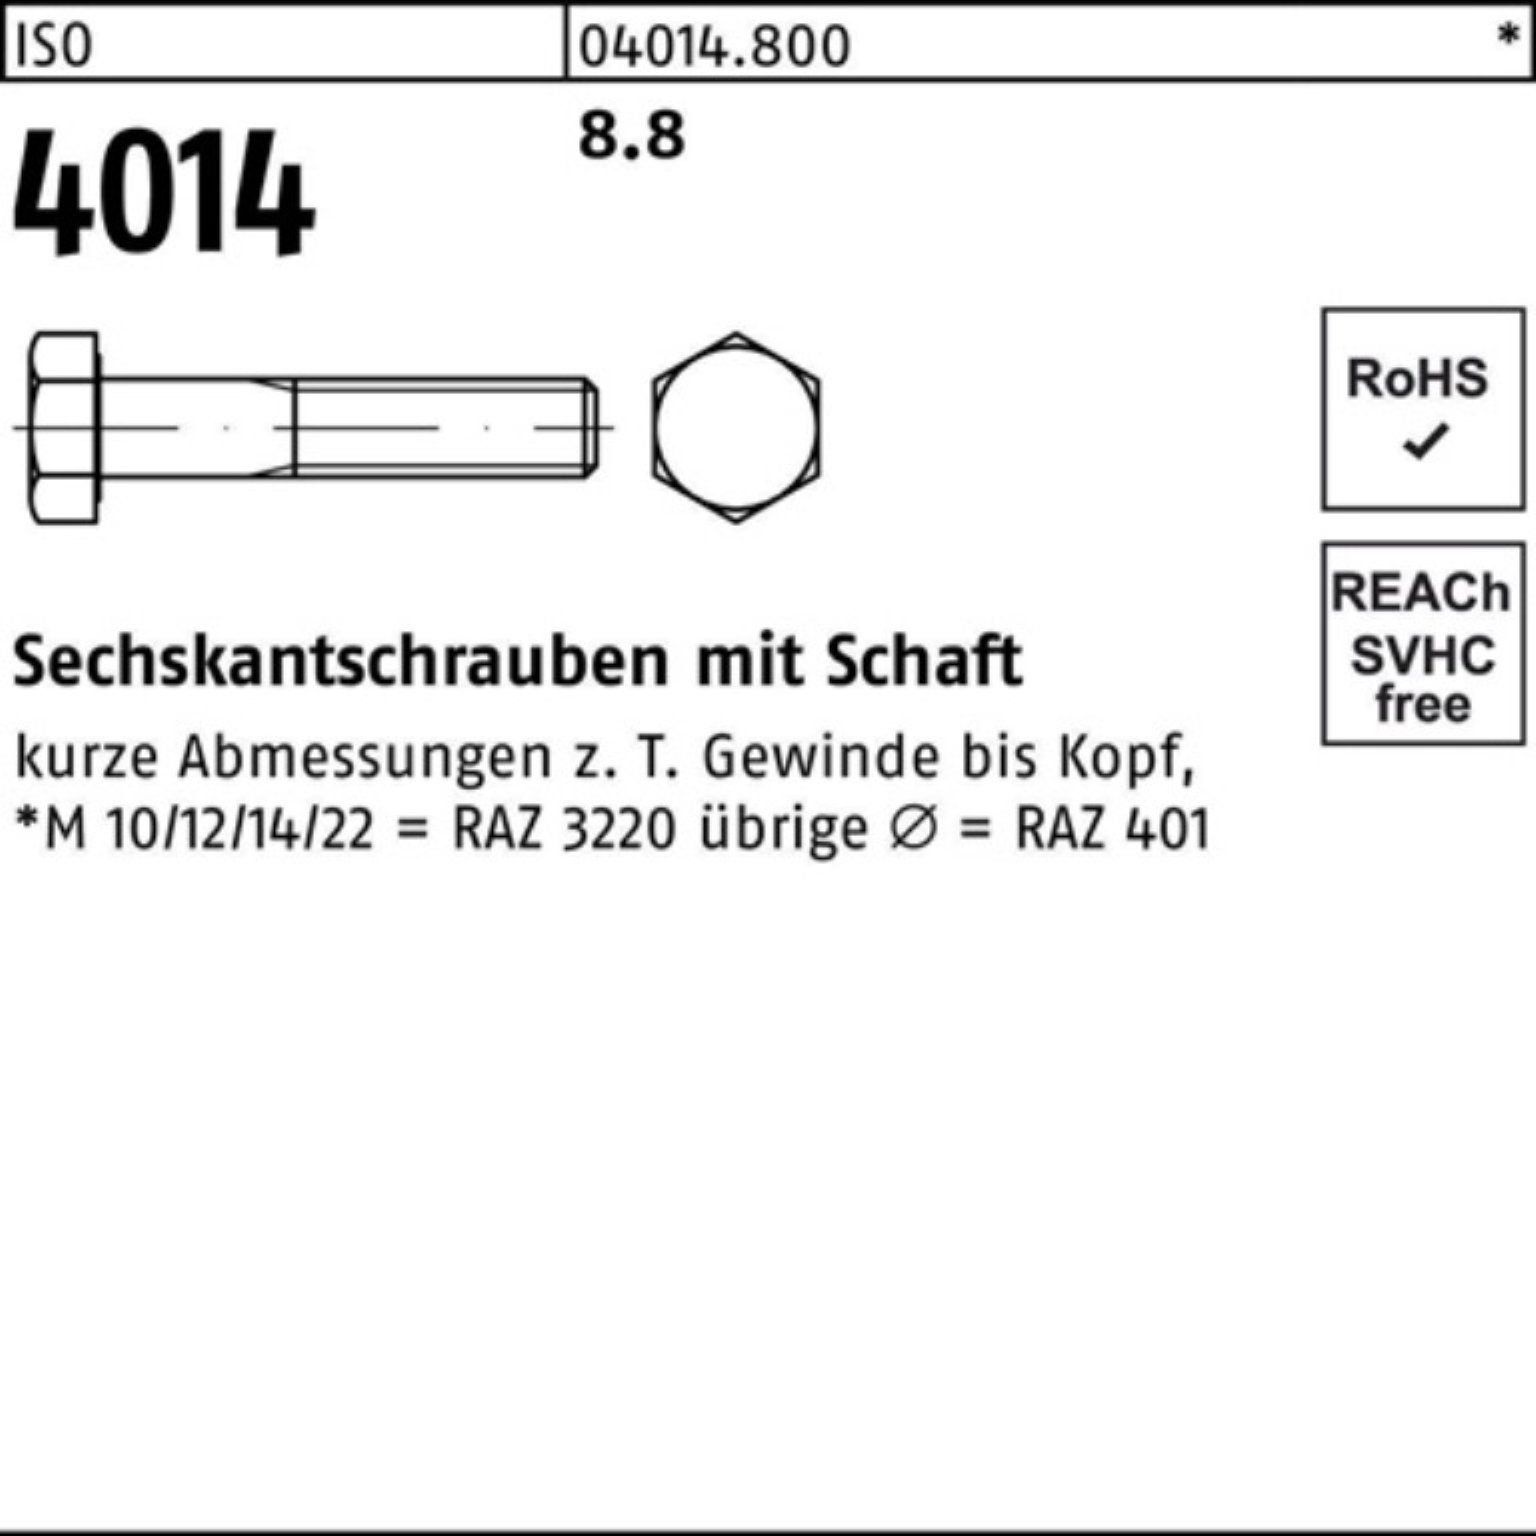 Pack Stück Sechskantschraube Sechskantschraube 8.8 M24x 1 Schaft 4014 100er ISO 170 Bufab ISO